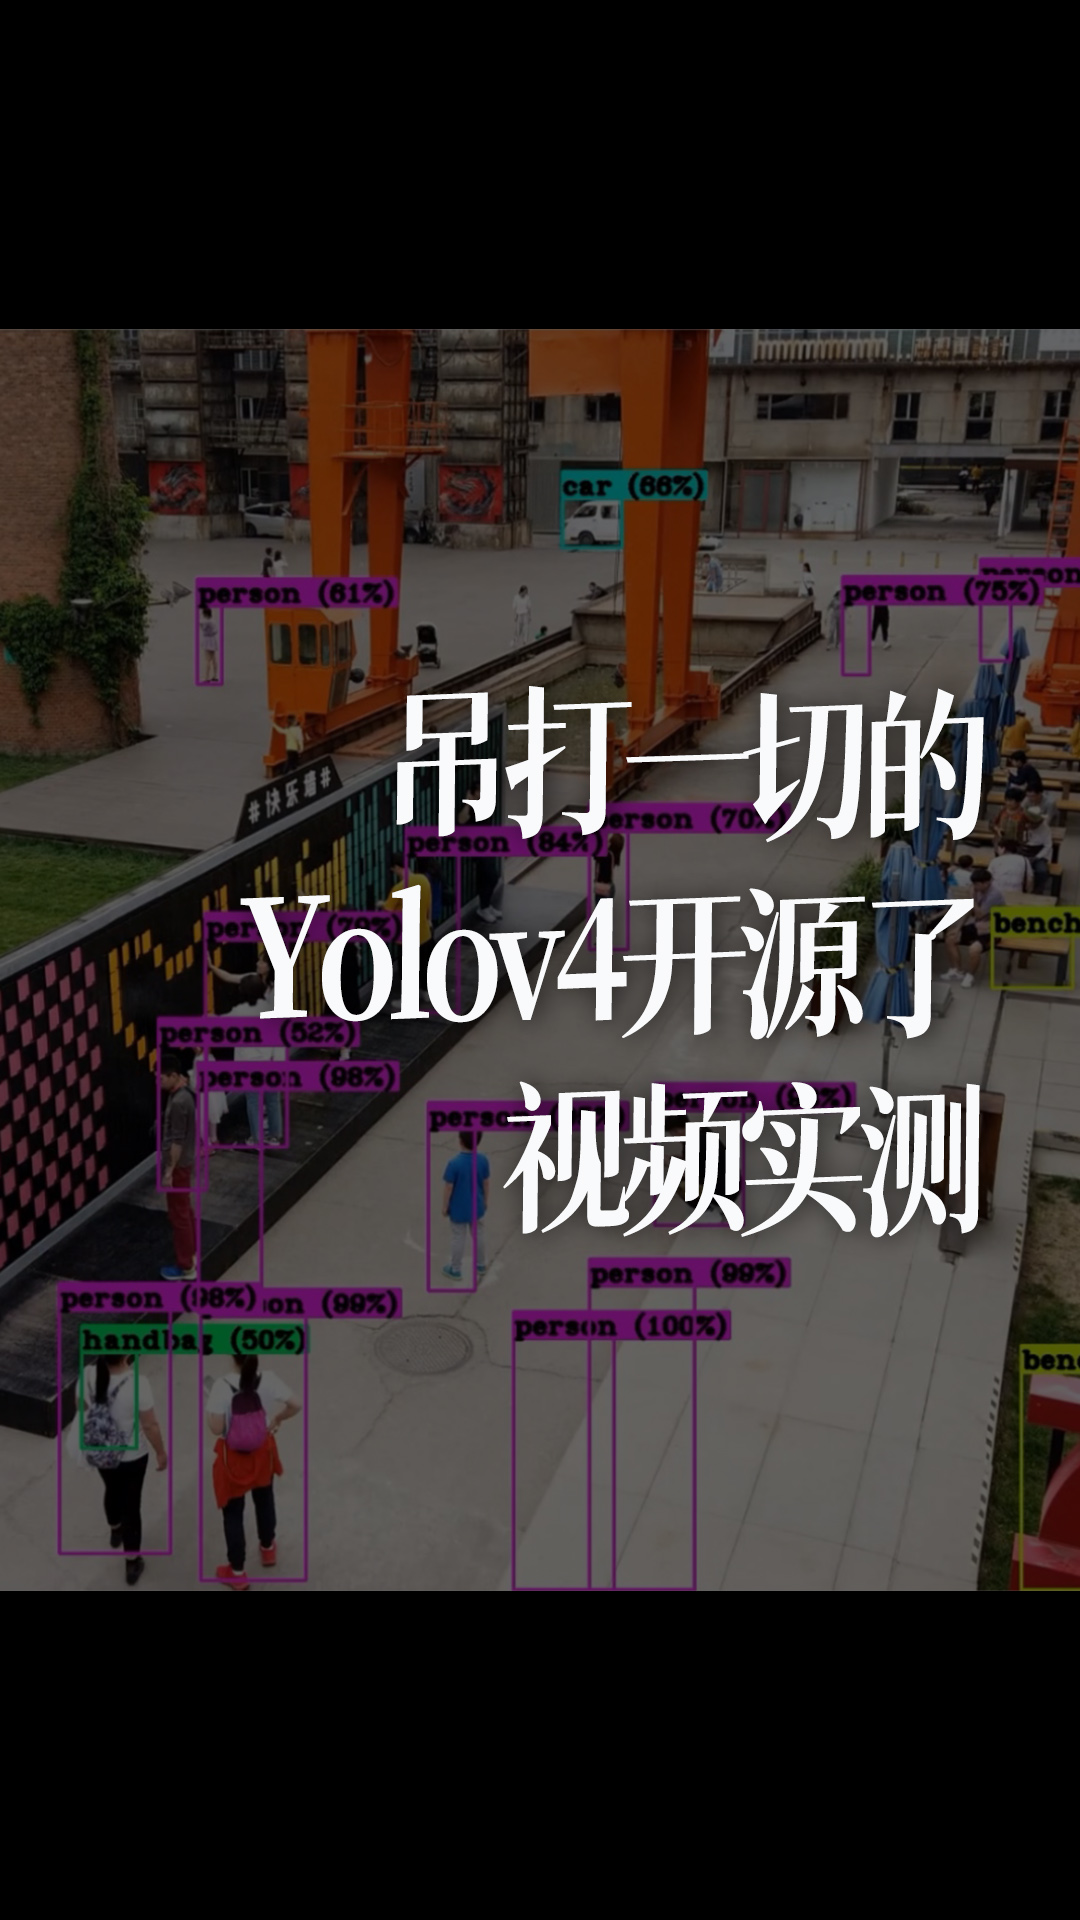 吊打一切的Yolov4开源了，视频实测 